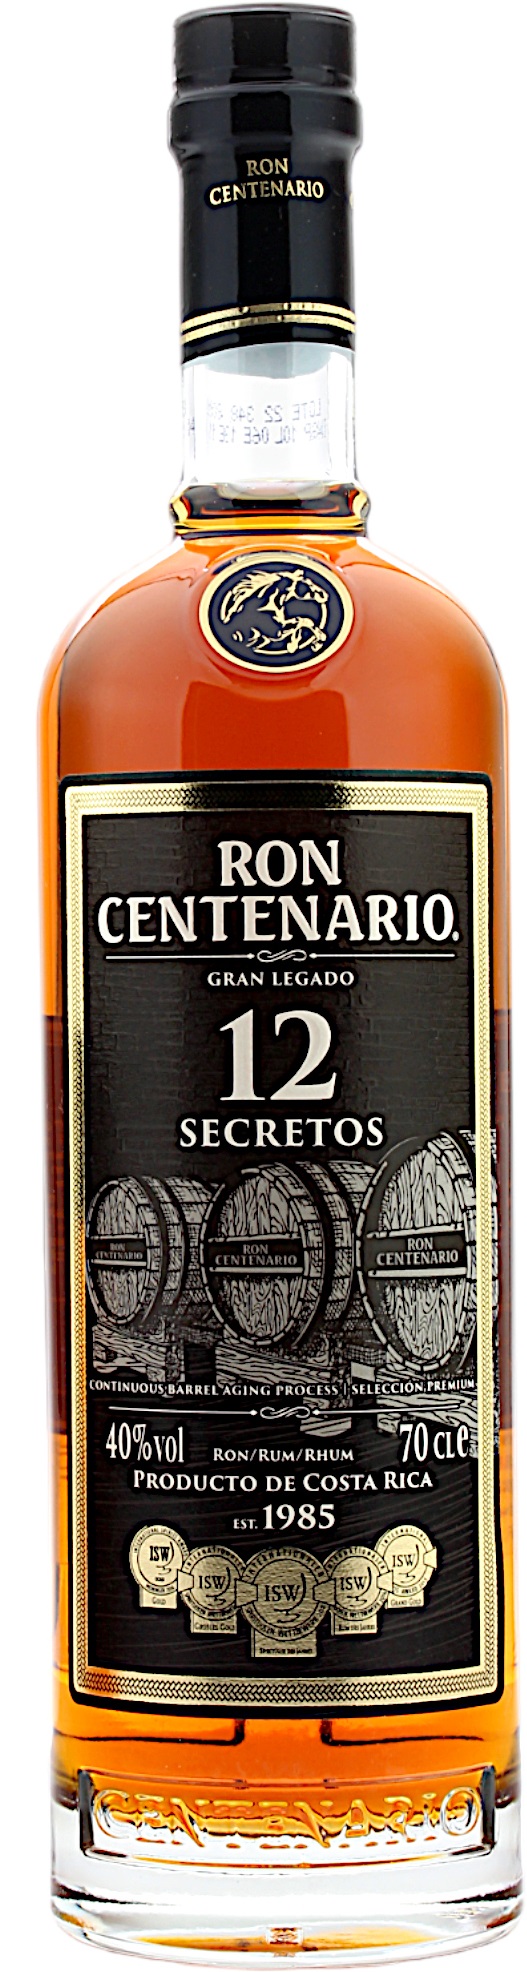 Ron Centenario Secretos 12